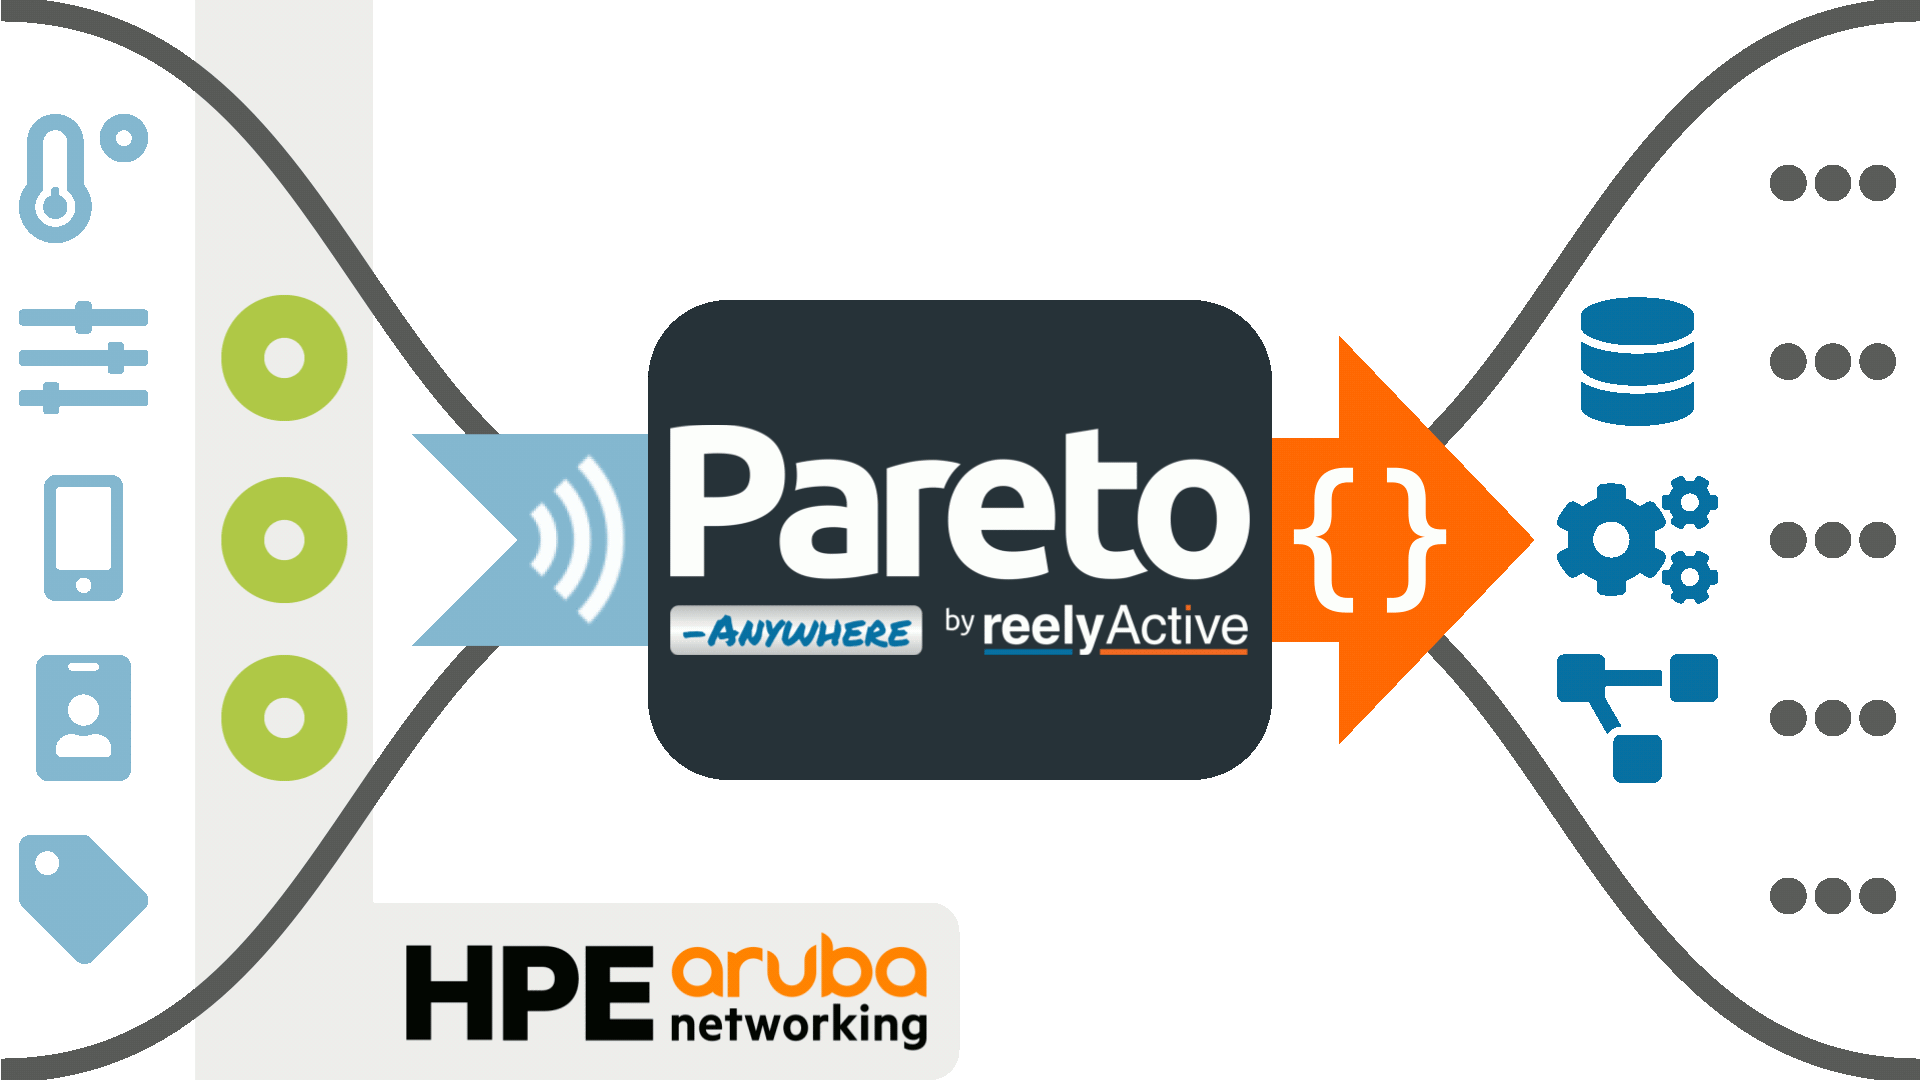 Pareto Anywhere & HPE Aruba Networking